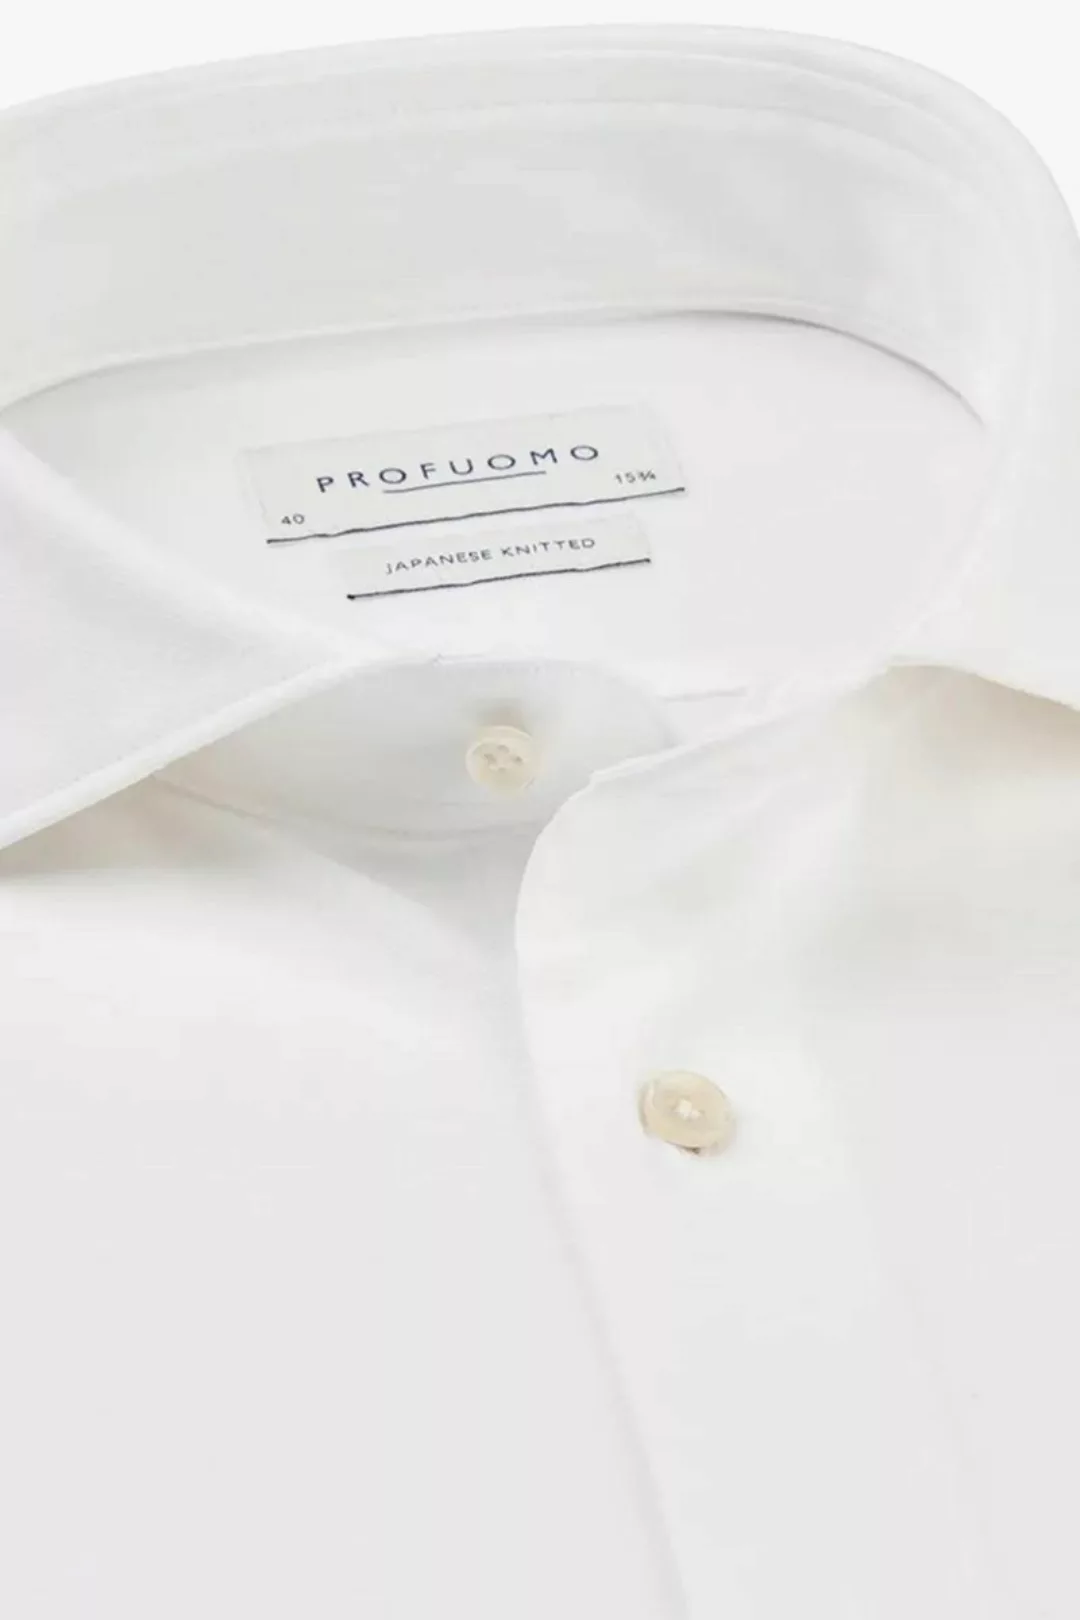 Profuomo Hemd Japanese Knitted Weiß - Größe 40 günstig online kaufen